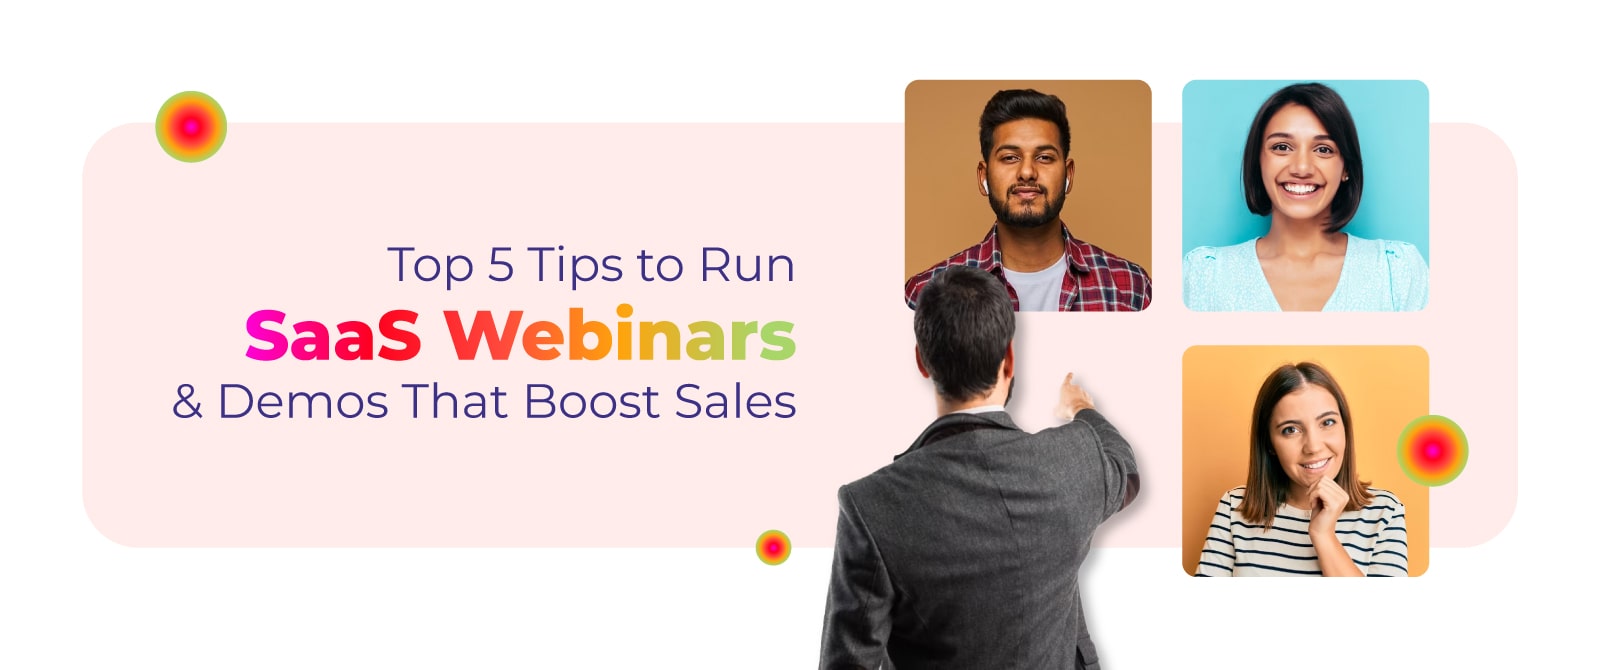 Top 5 Tips to Host SaaS Webinars & Demos That Boost Sales